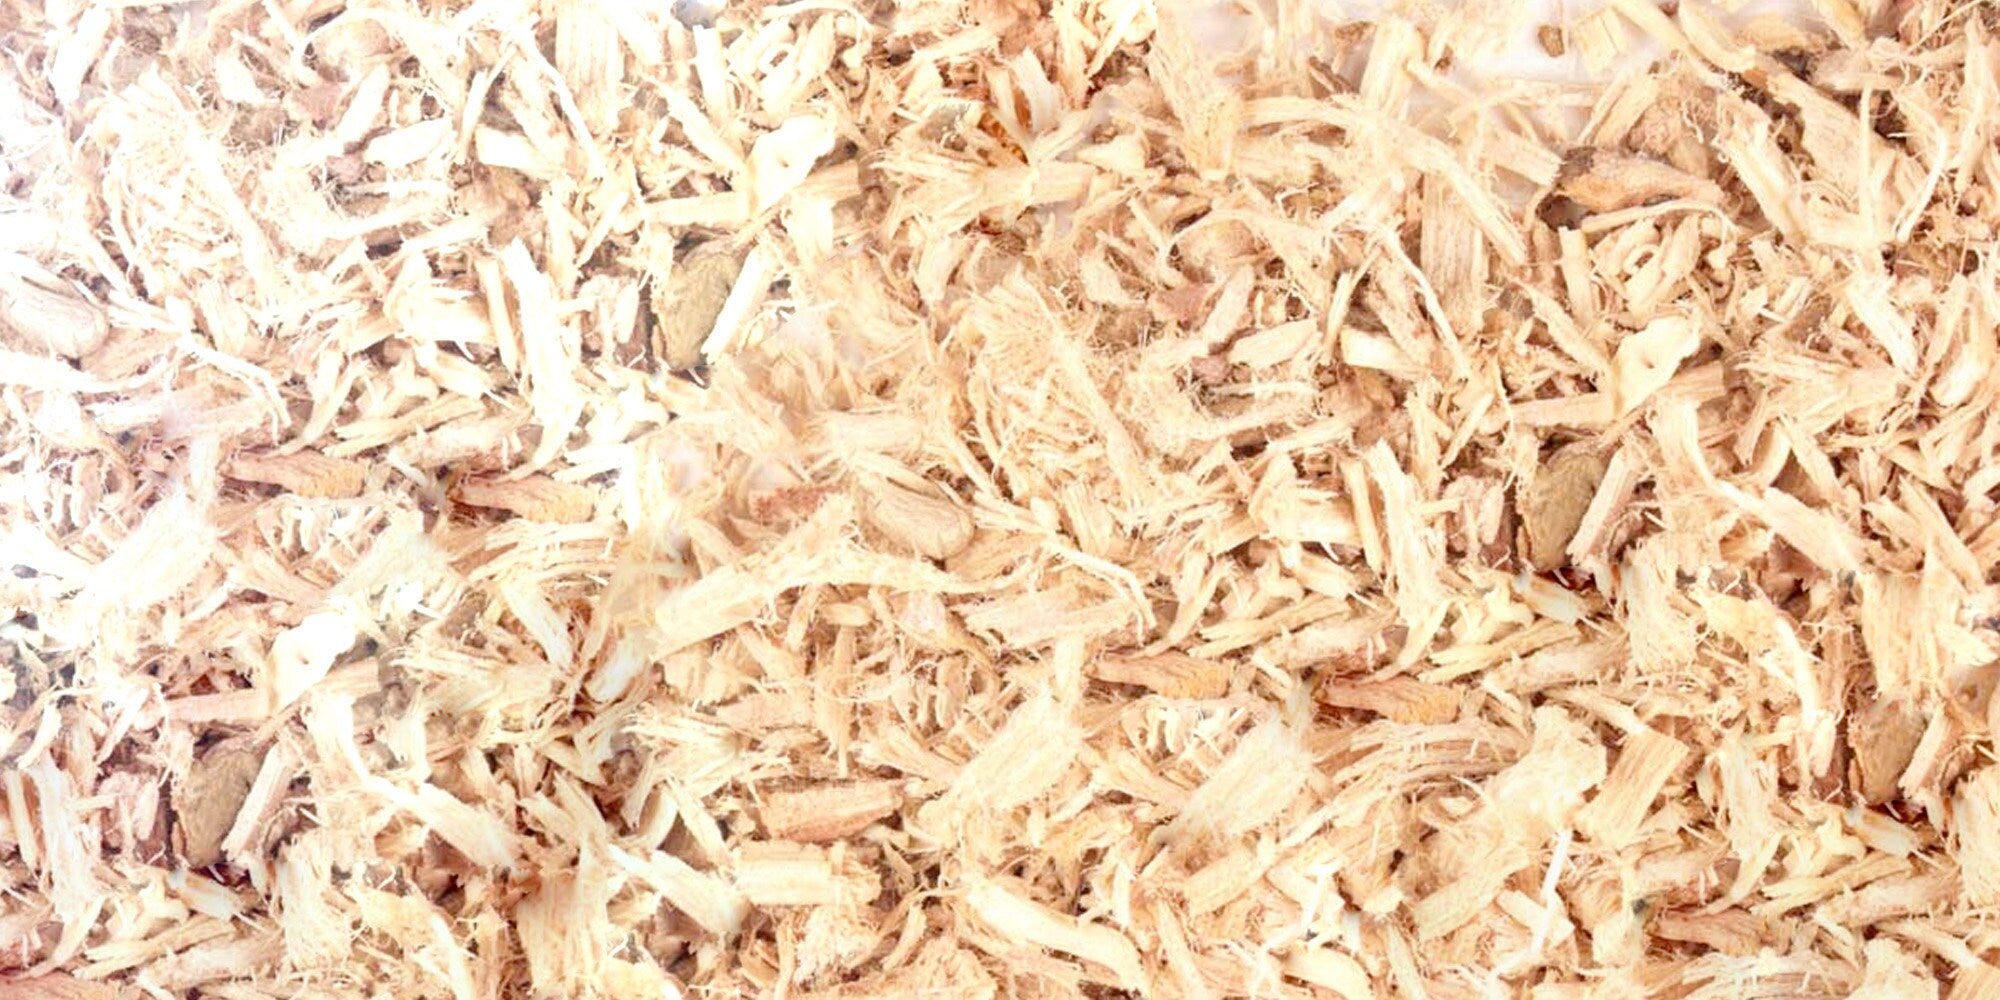 Stillingia Root Bulk - 優質乾燥 Stillingia sylvatica 根 - 傳統草藥療法